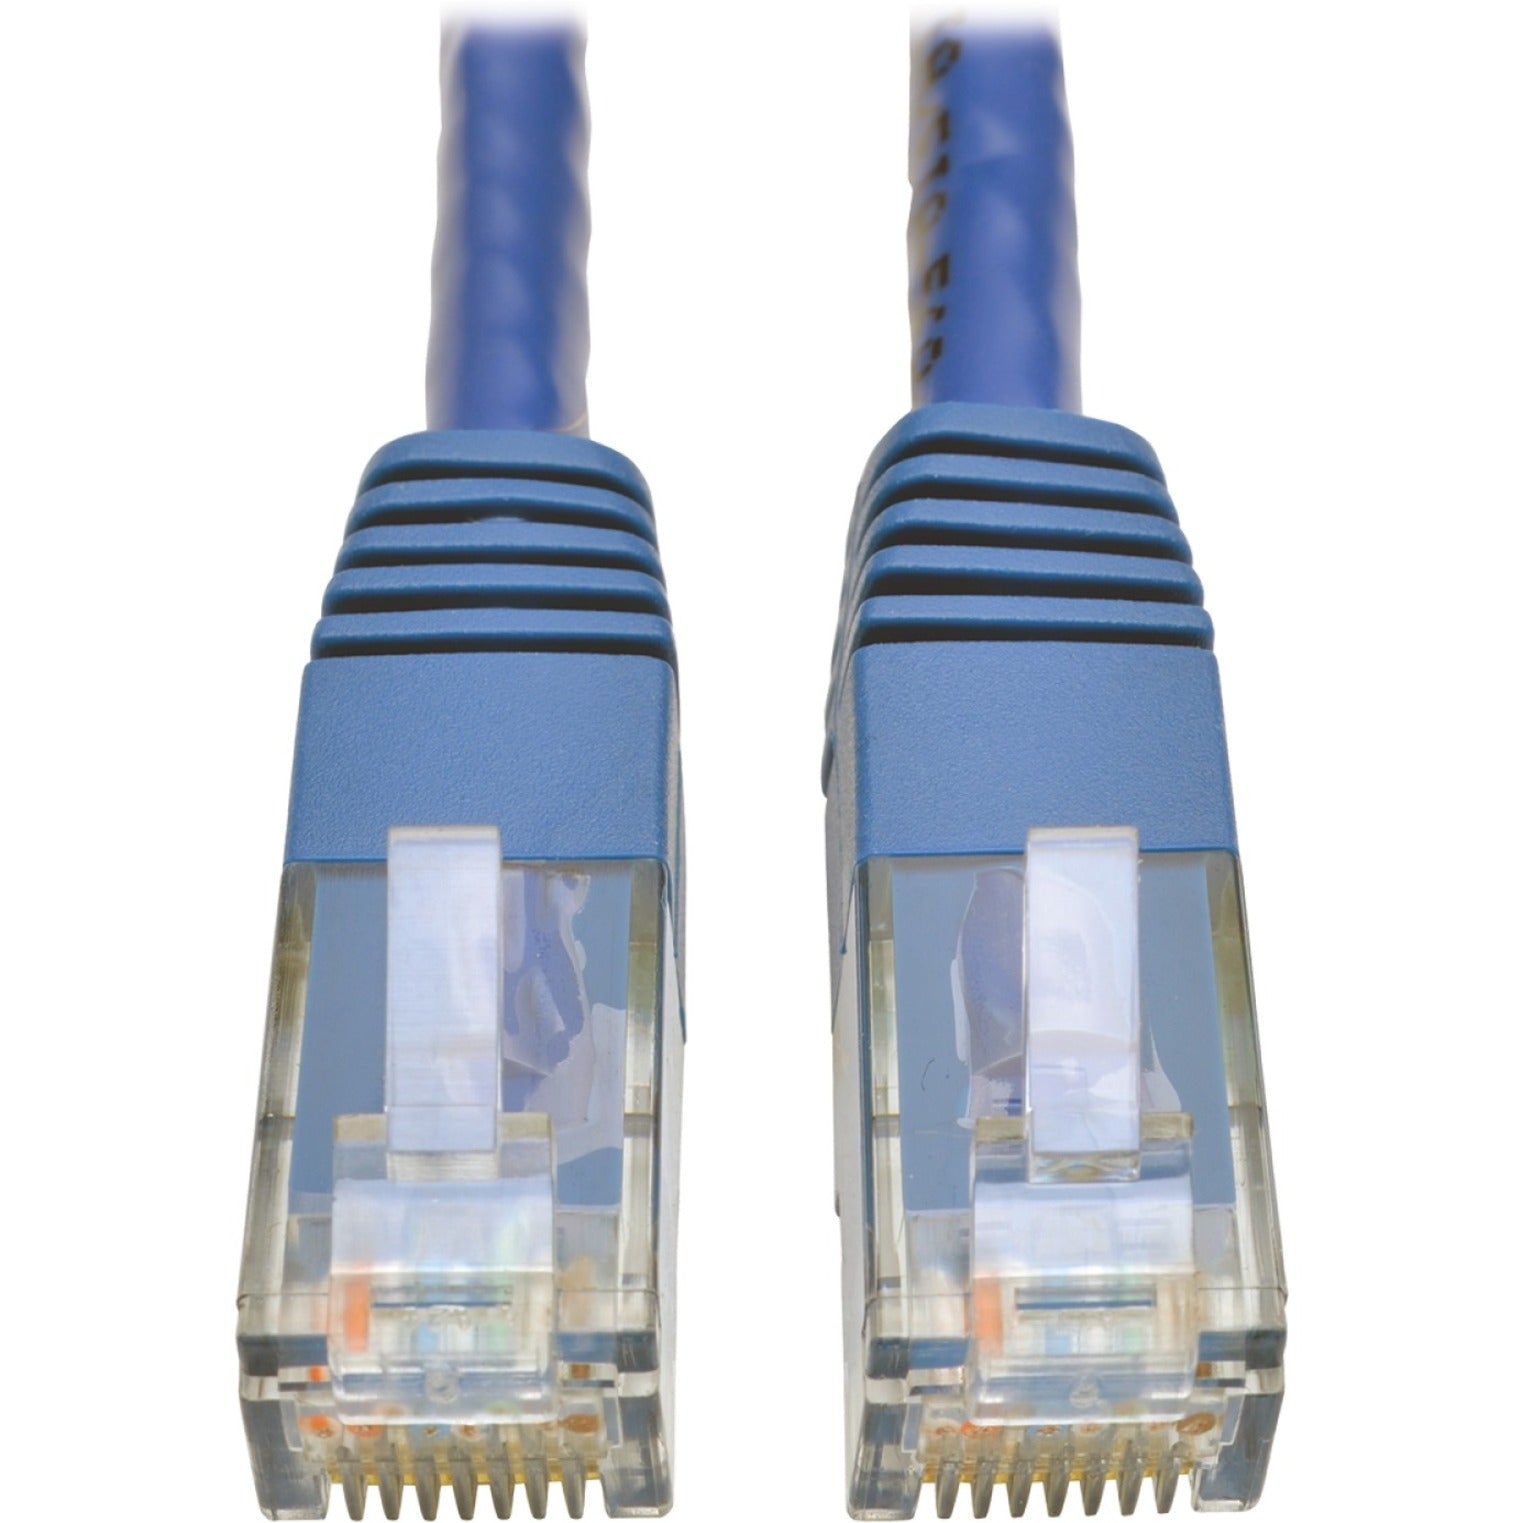 Tripp Lite N200-003-BL Cat6 Gigabit Molded Patch Cable (RJ45 M/M), Blue, 3 ft, Active, Strain Relief, 1 Gbit/s